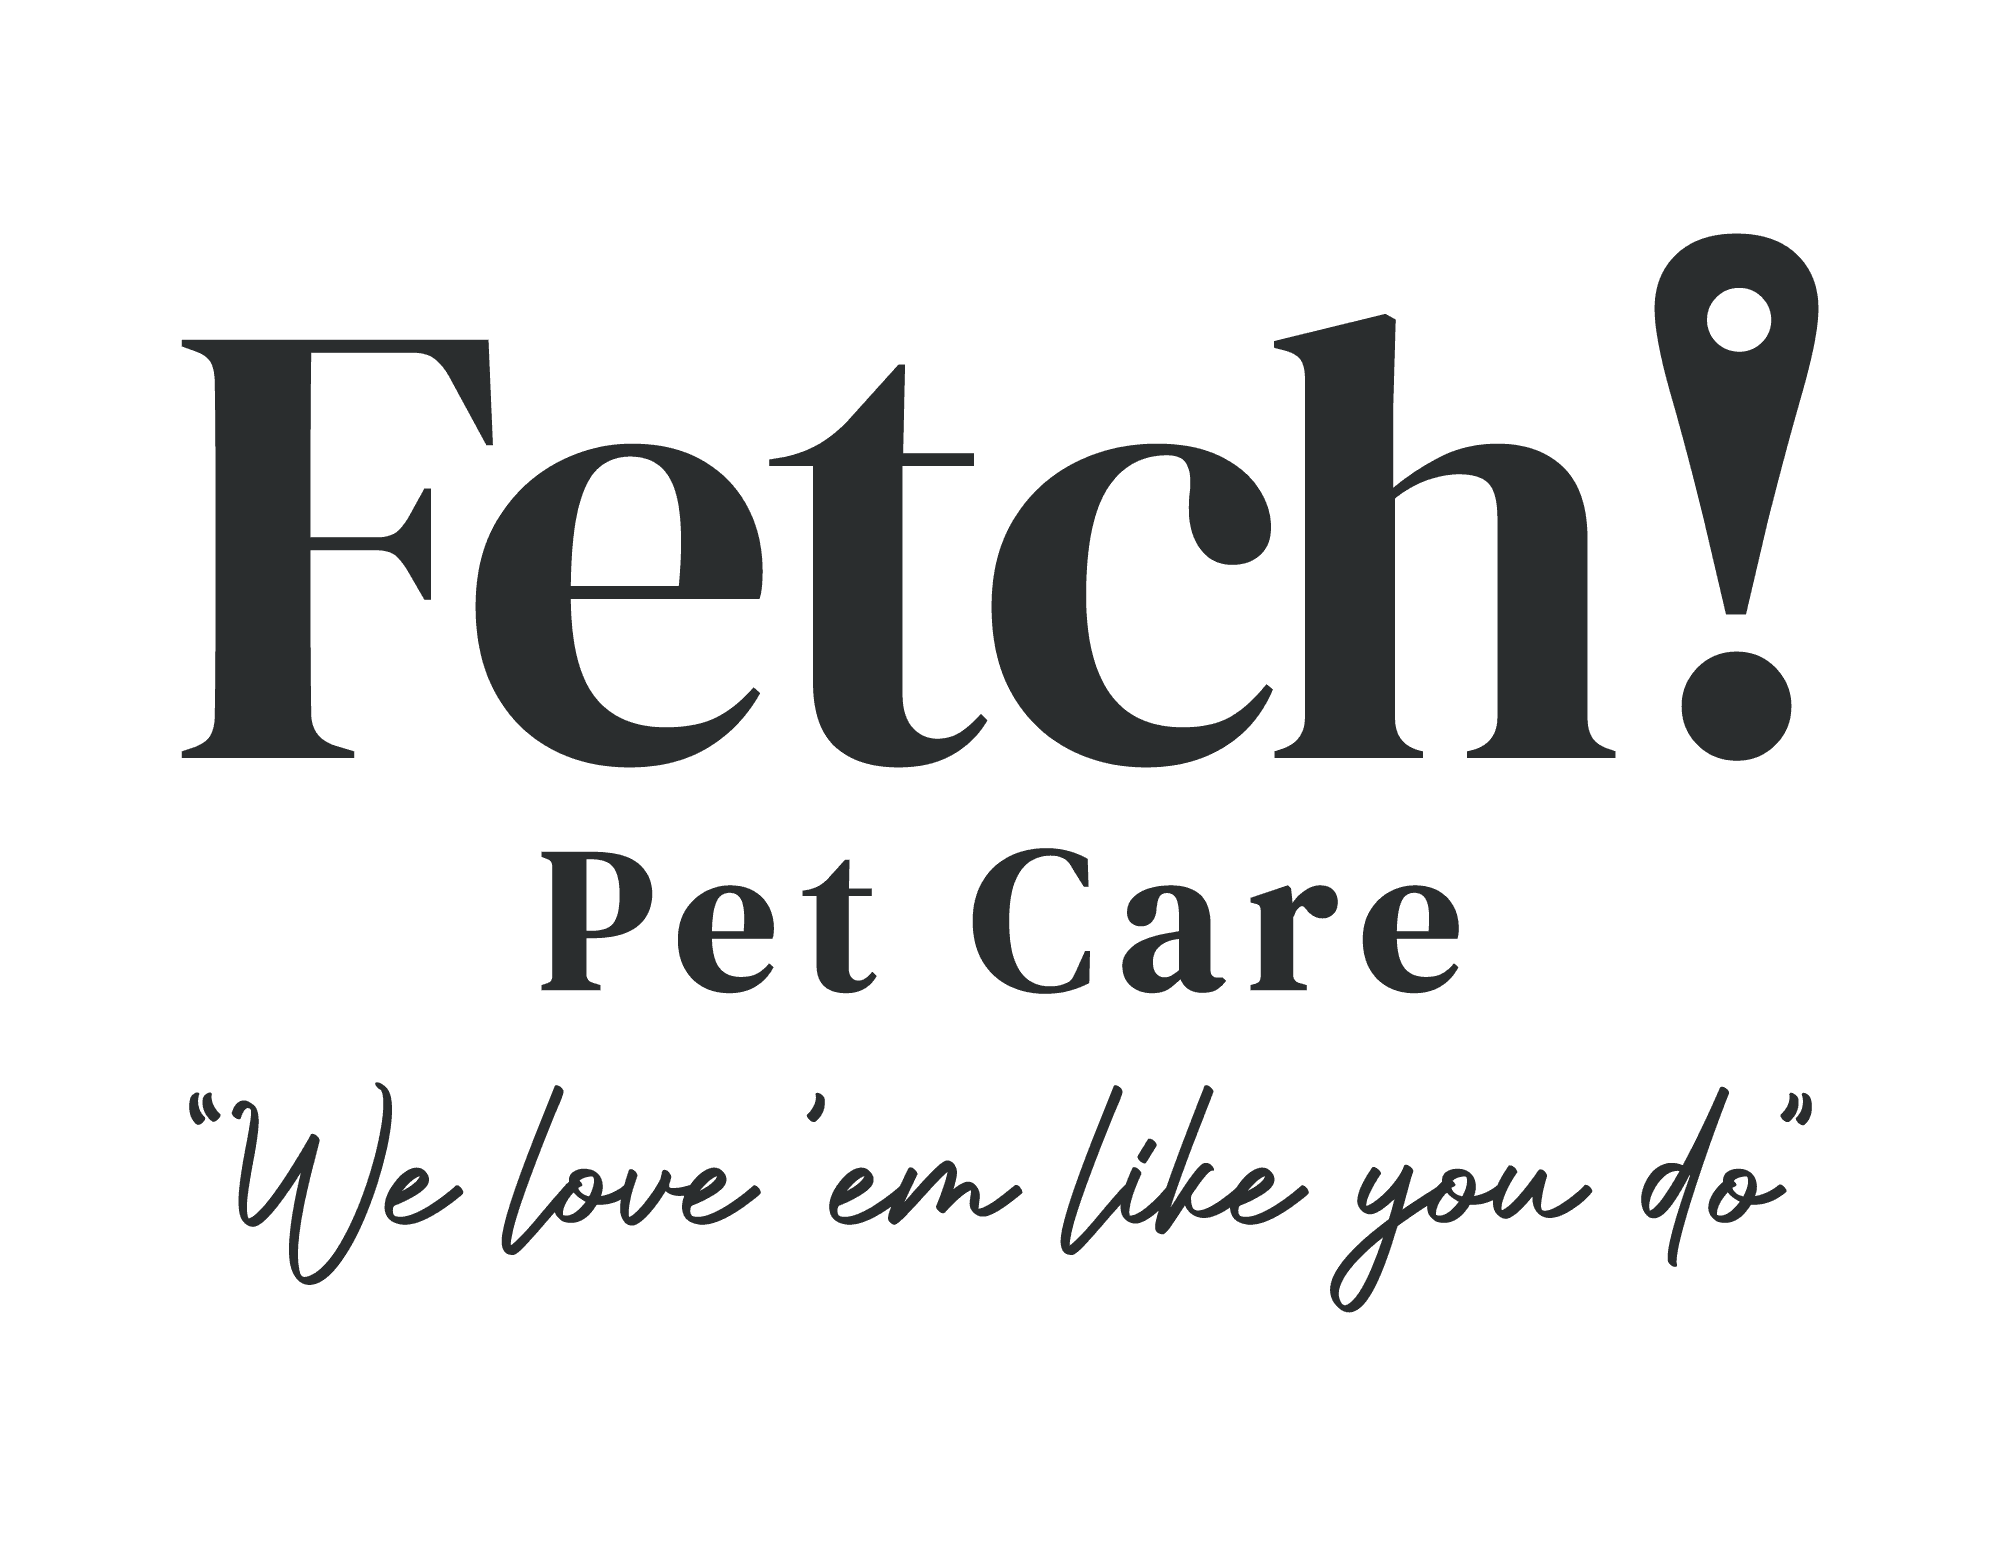 Fetch! Pet Care